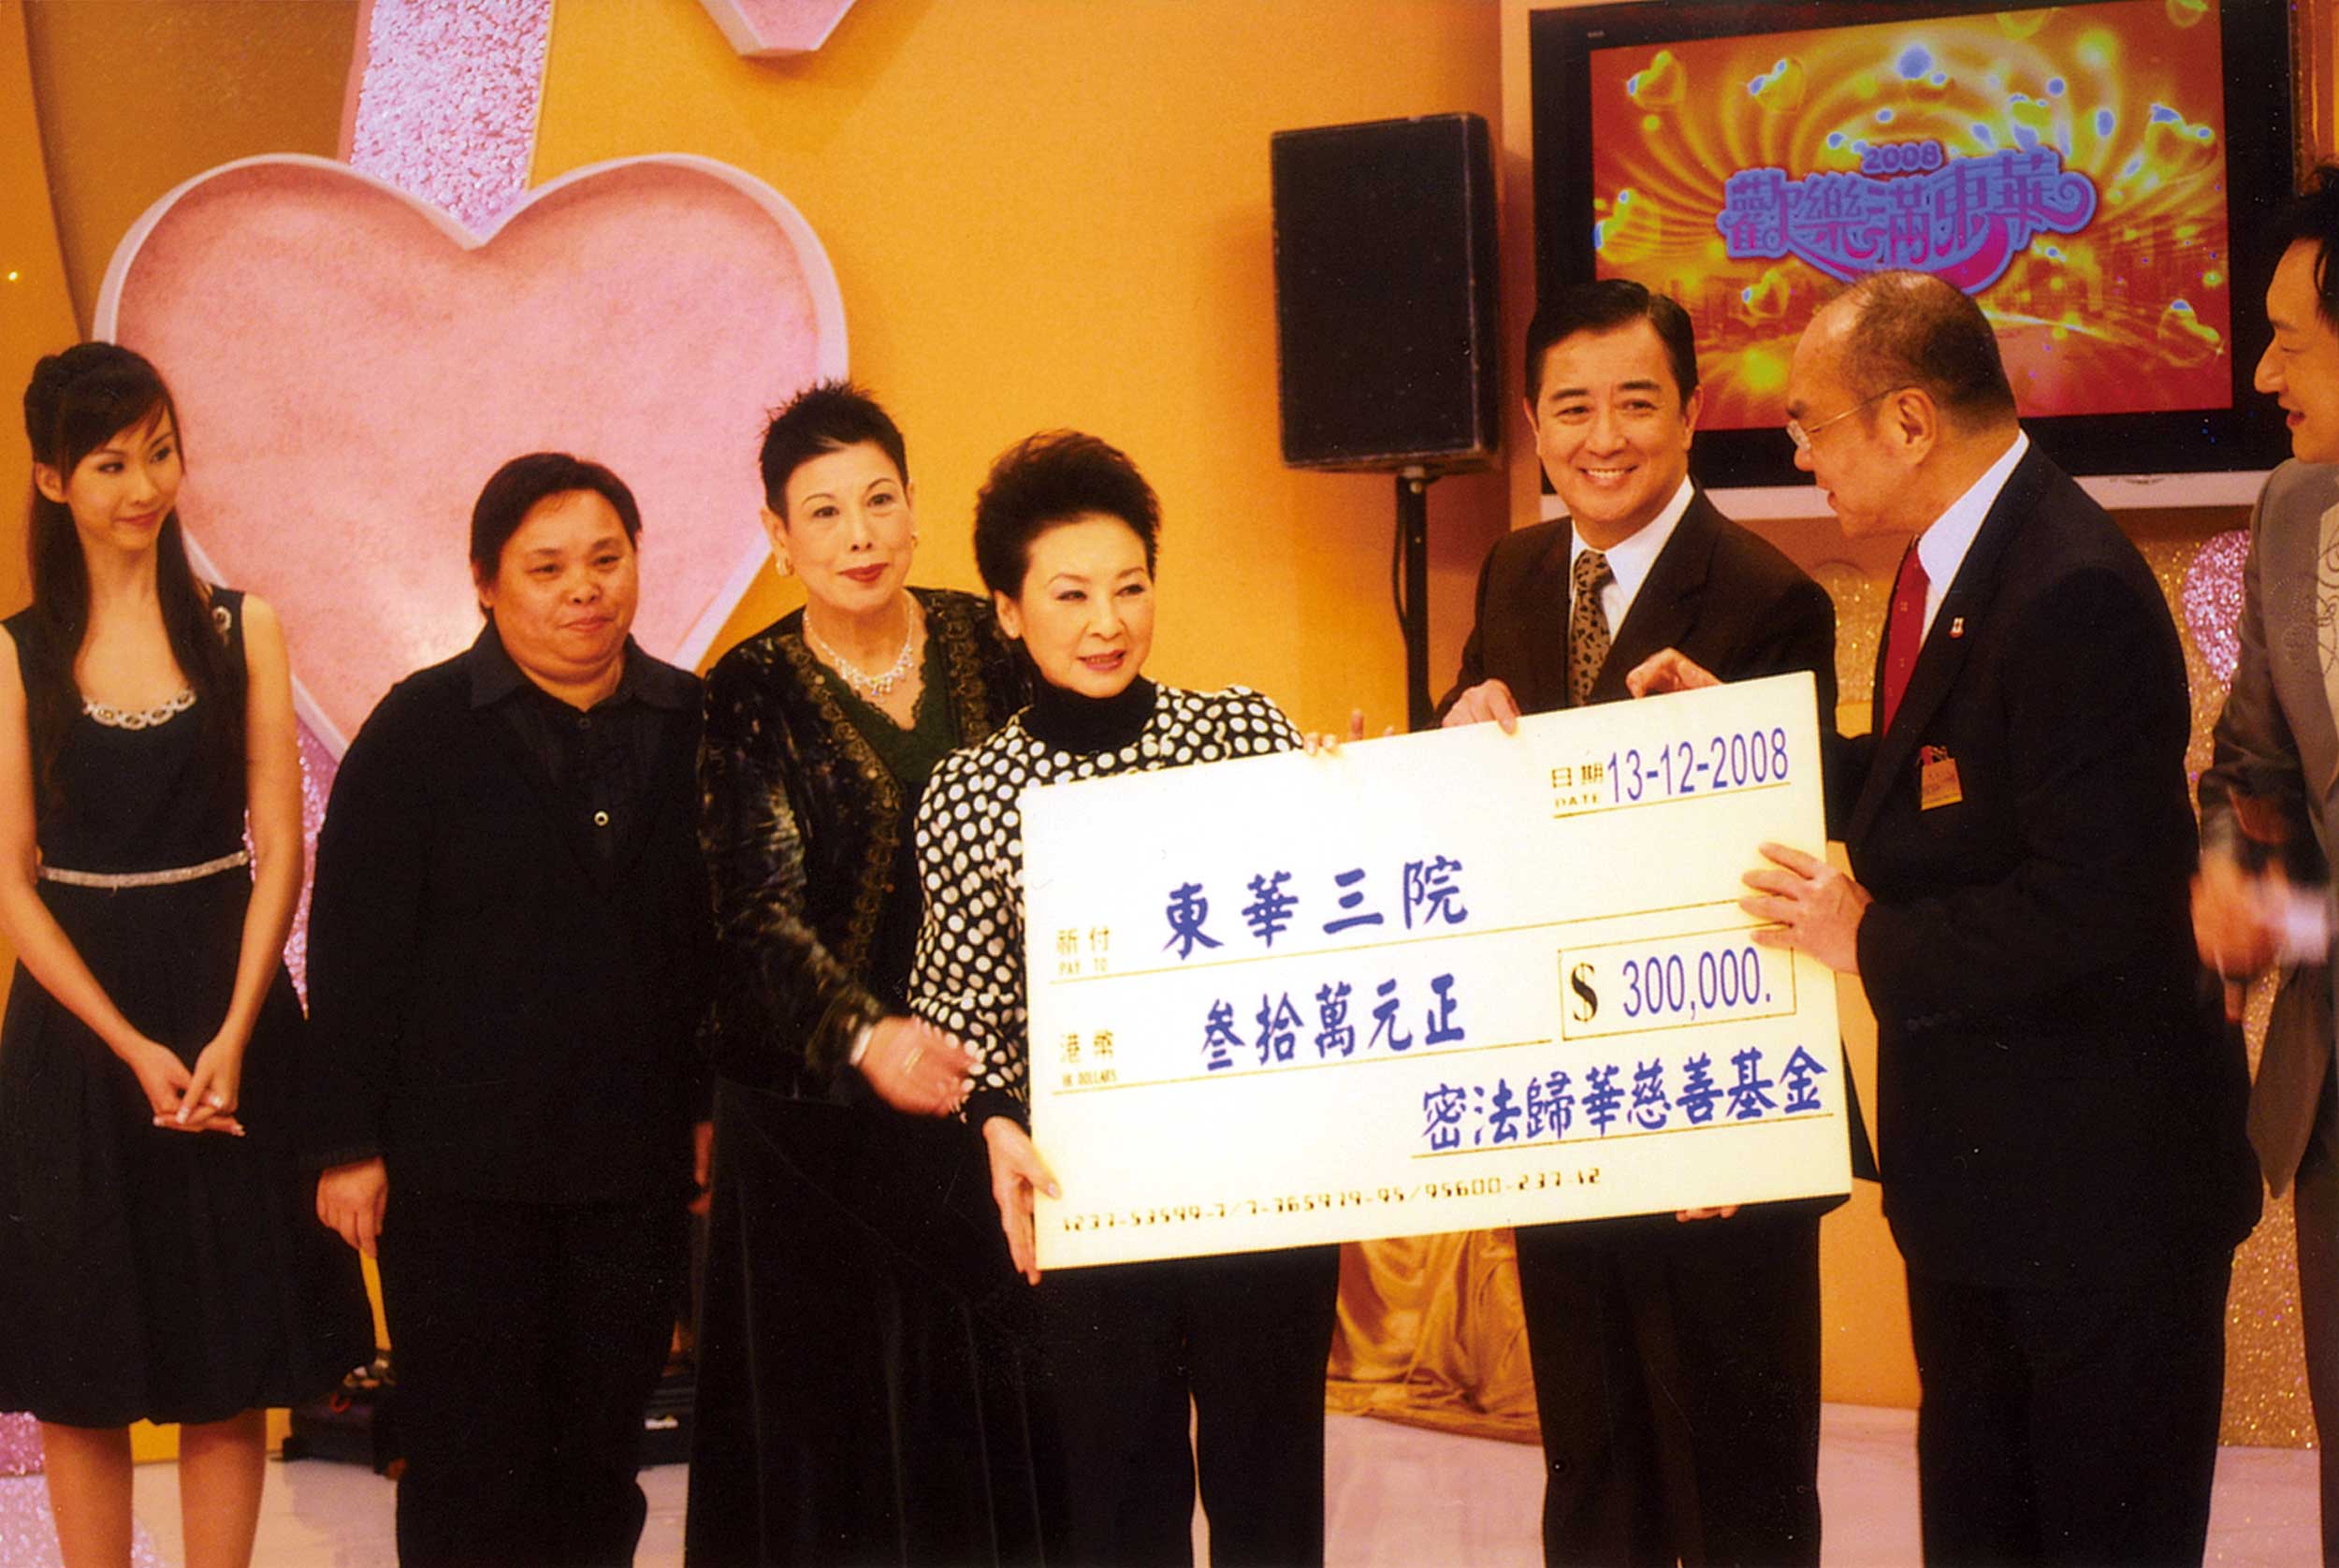 為使空海入唐密法歸華重回中華文化，每年贊助東華三院歡樂滿東華募捐活動，並首次撰寫「空海入唐」粵劇折子戲。